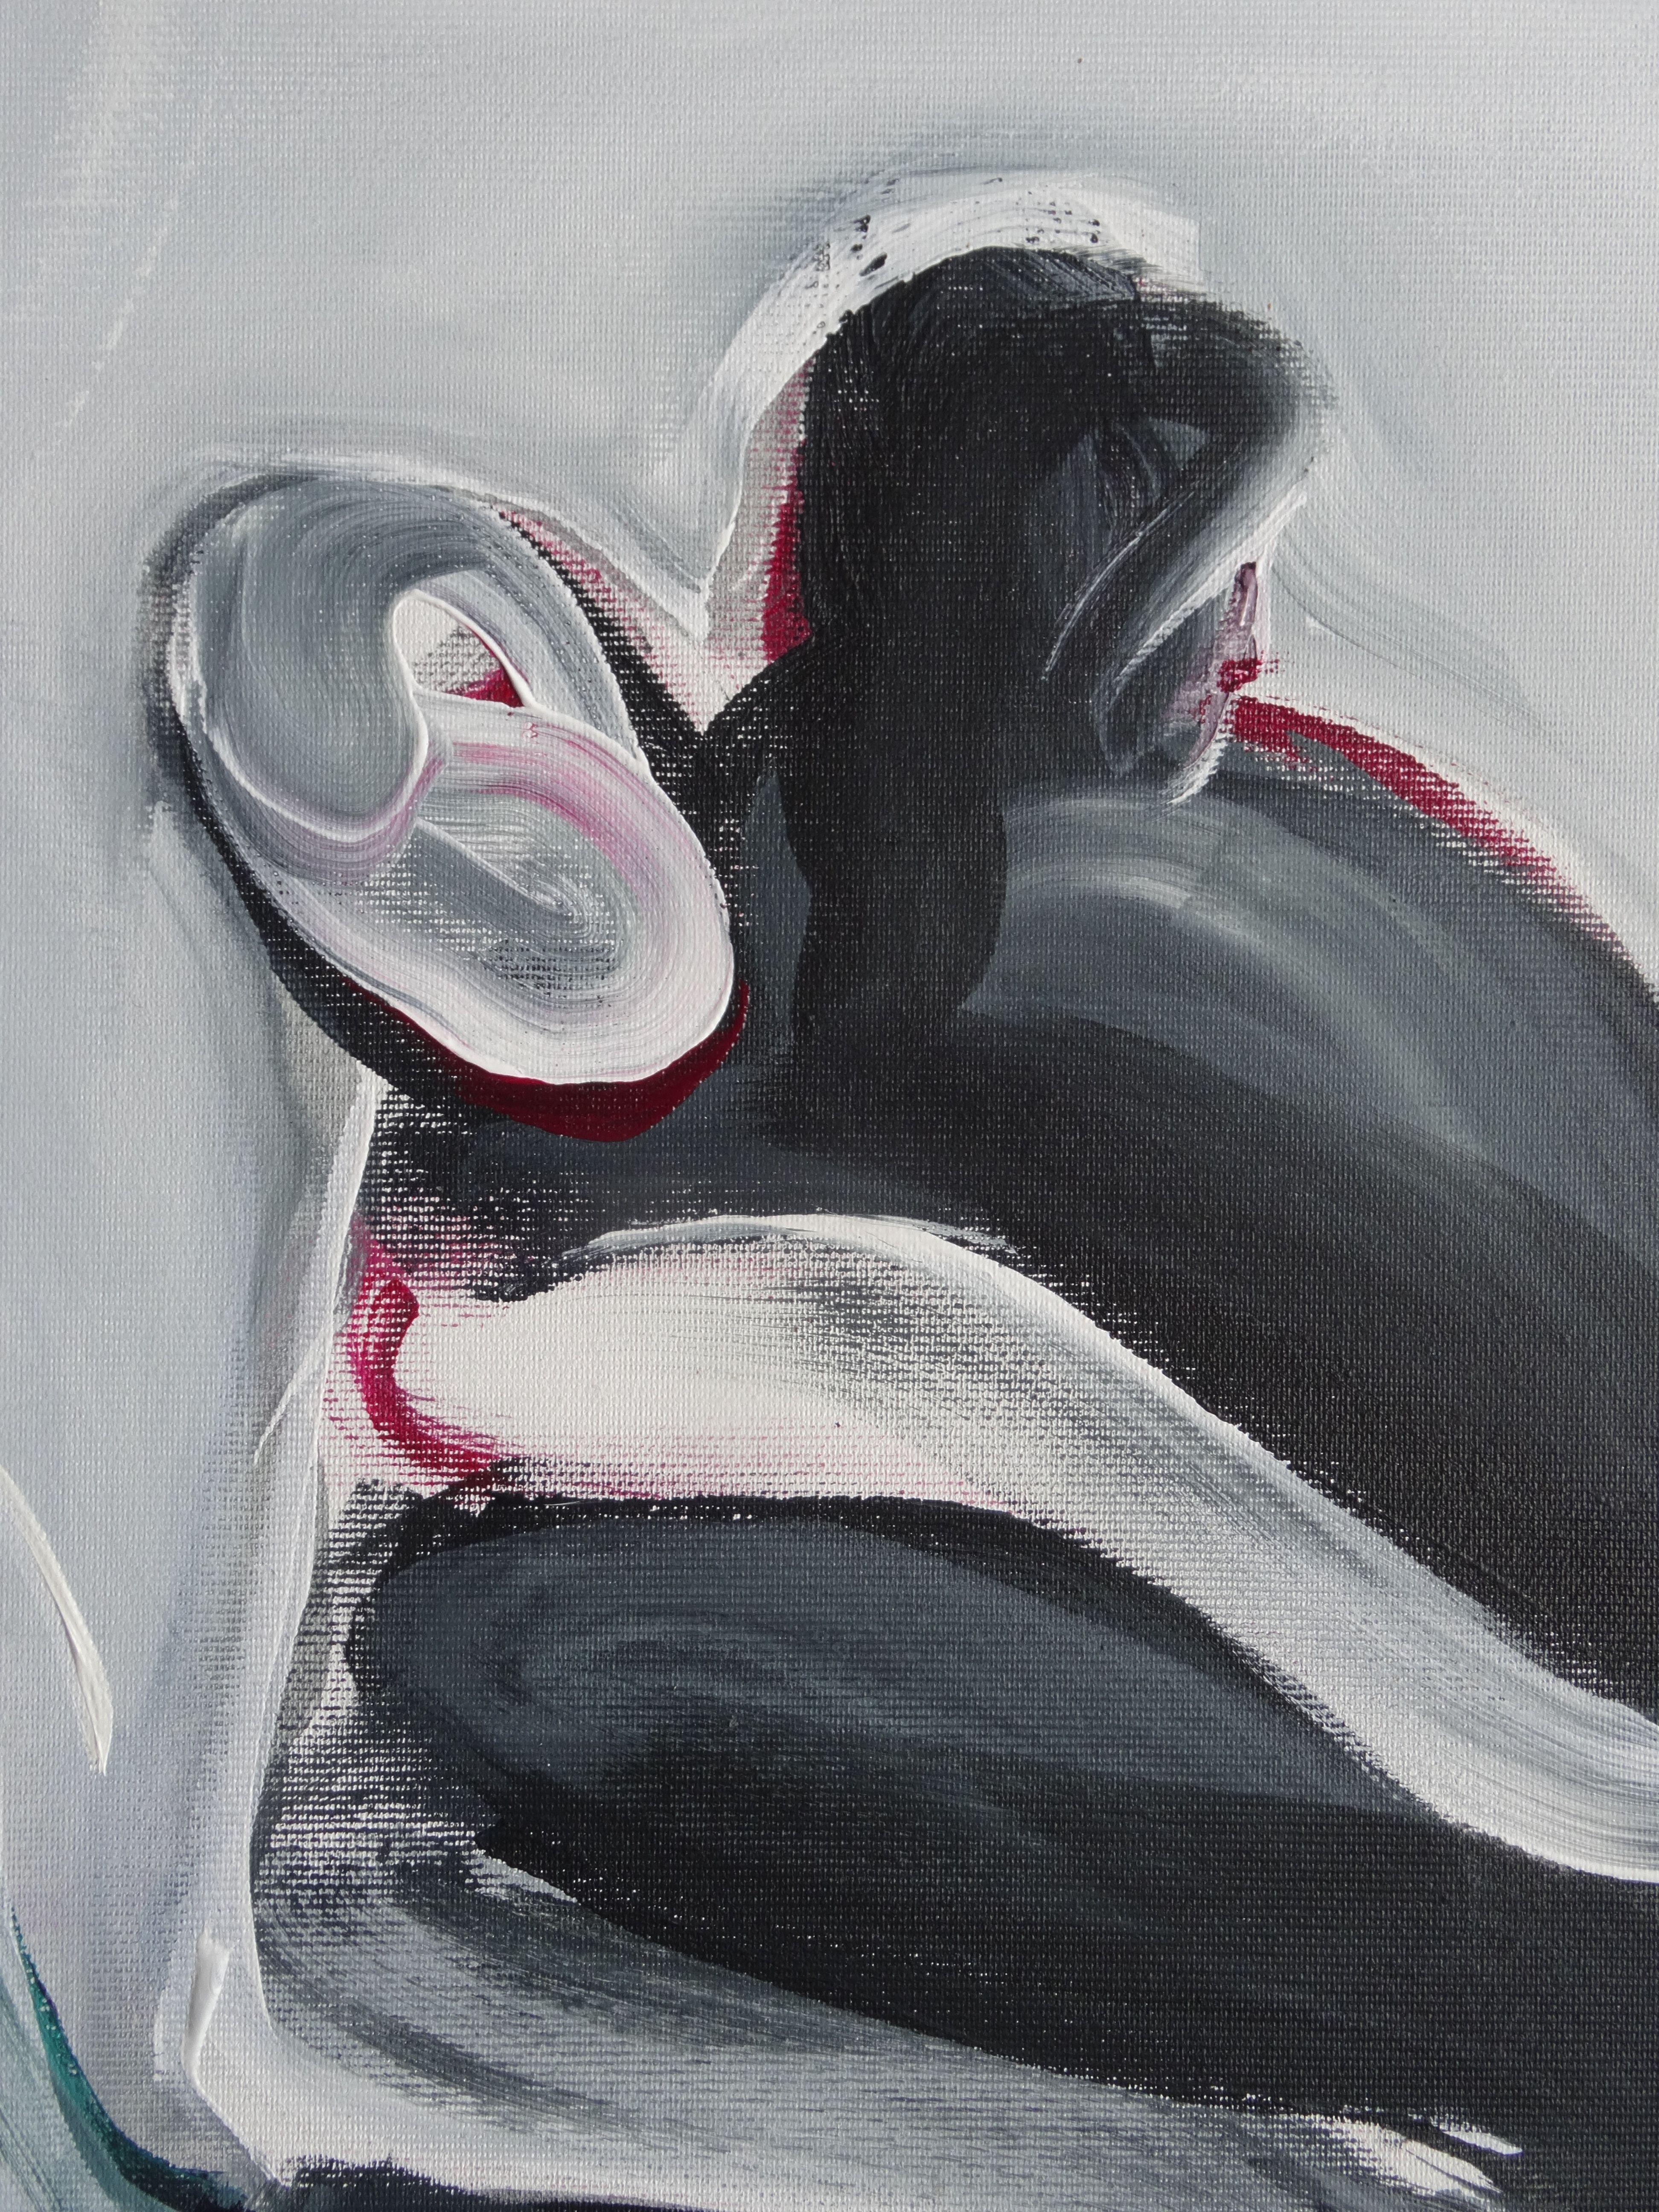 Menschliche Berührung VIII. 2020. Segeltuch, Acryl, 60x41 cm – Painting von Irina Spakova